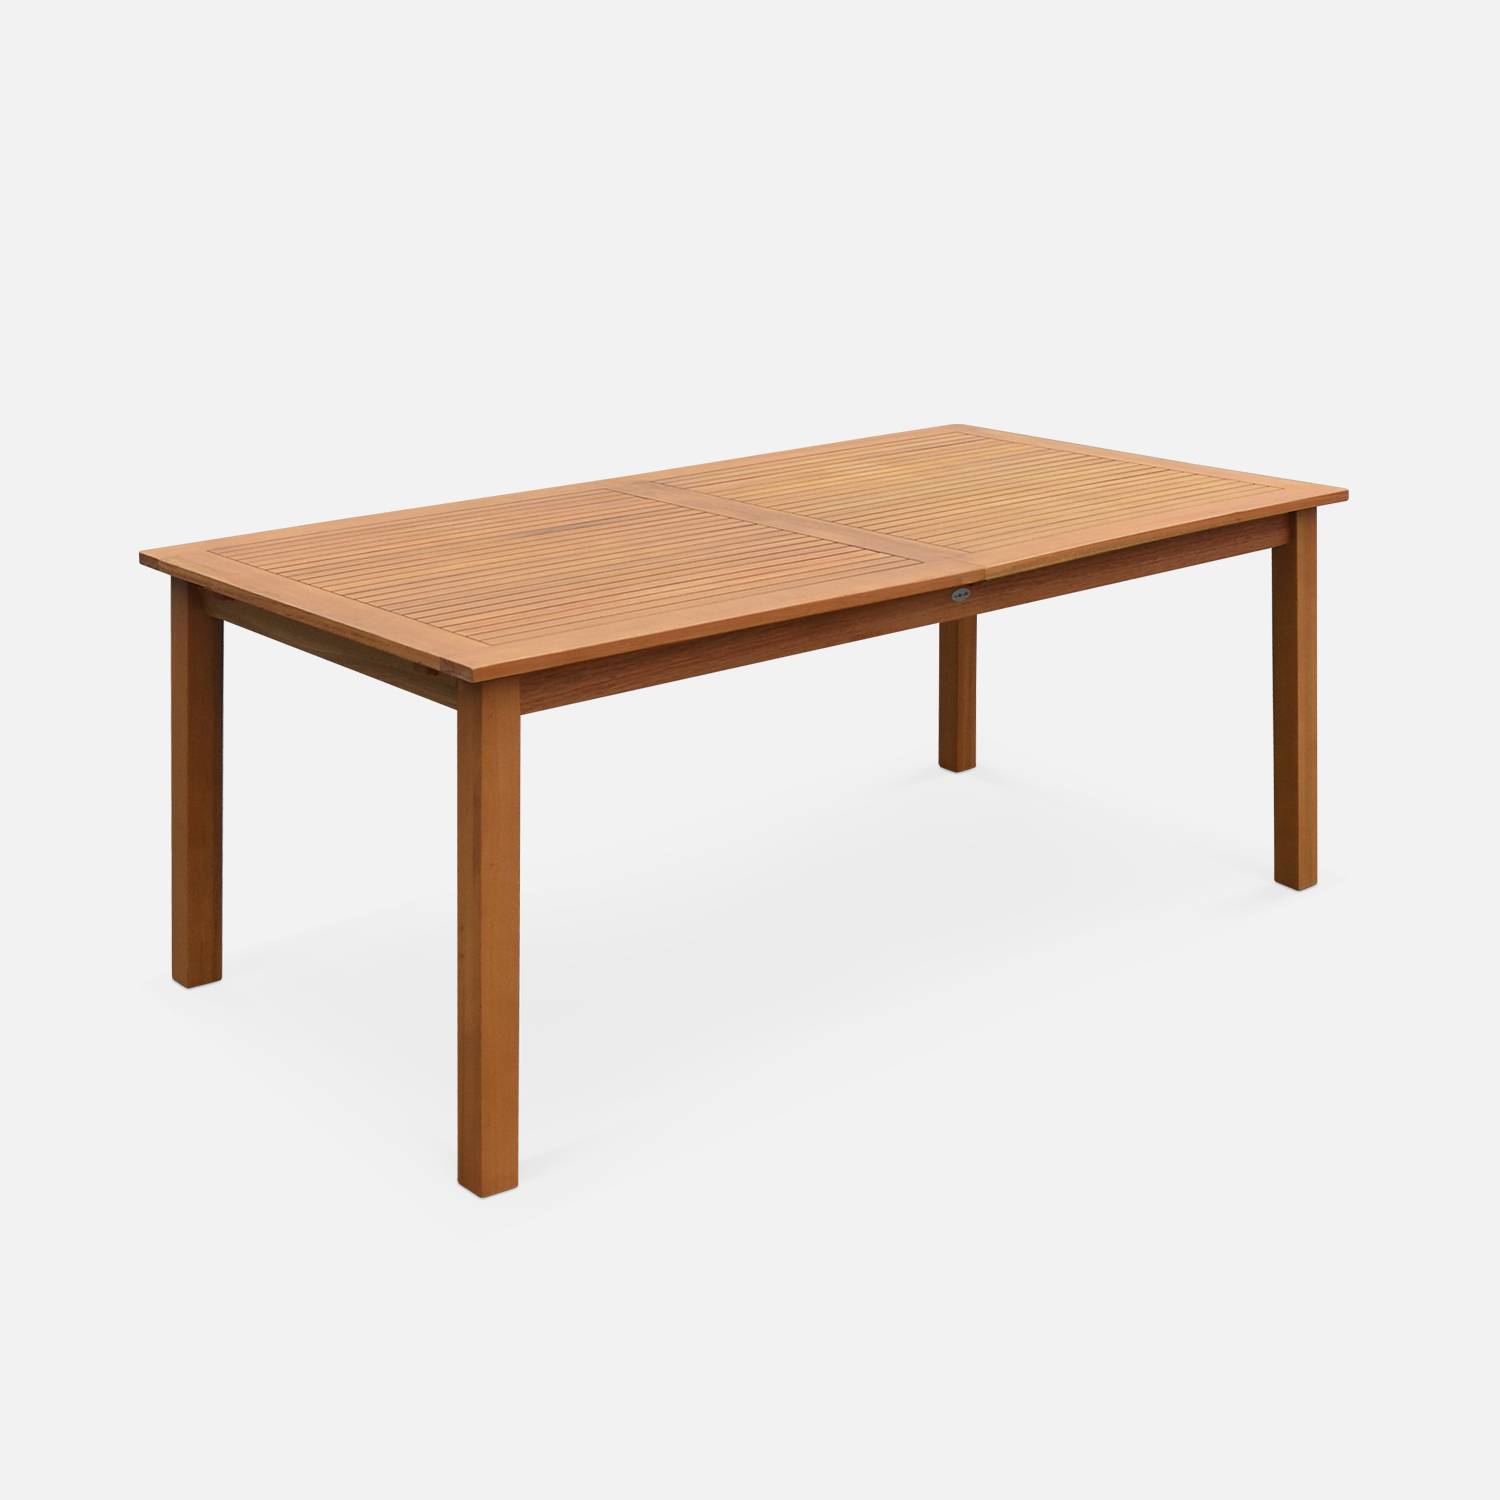 Tavolo da giardino, in legno, dimensioni: 180-240cm - modello: Almeria - Grande tavolo rettangolare con prolunga, in eucalipto FSC Photo5